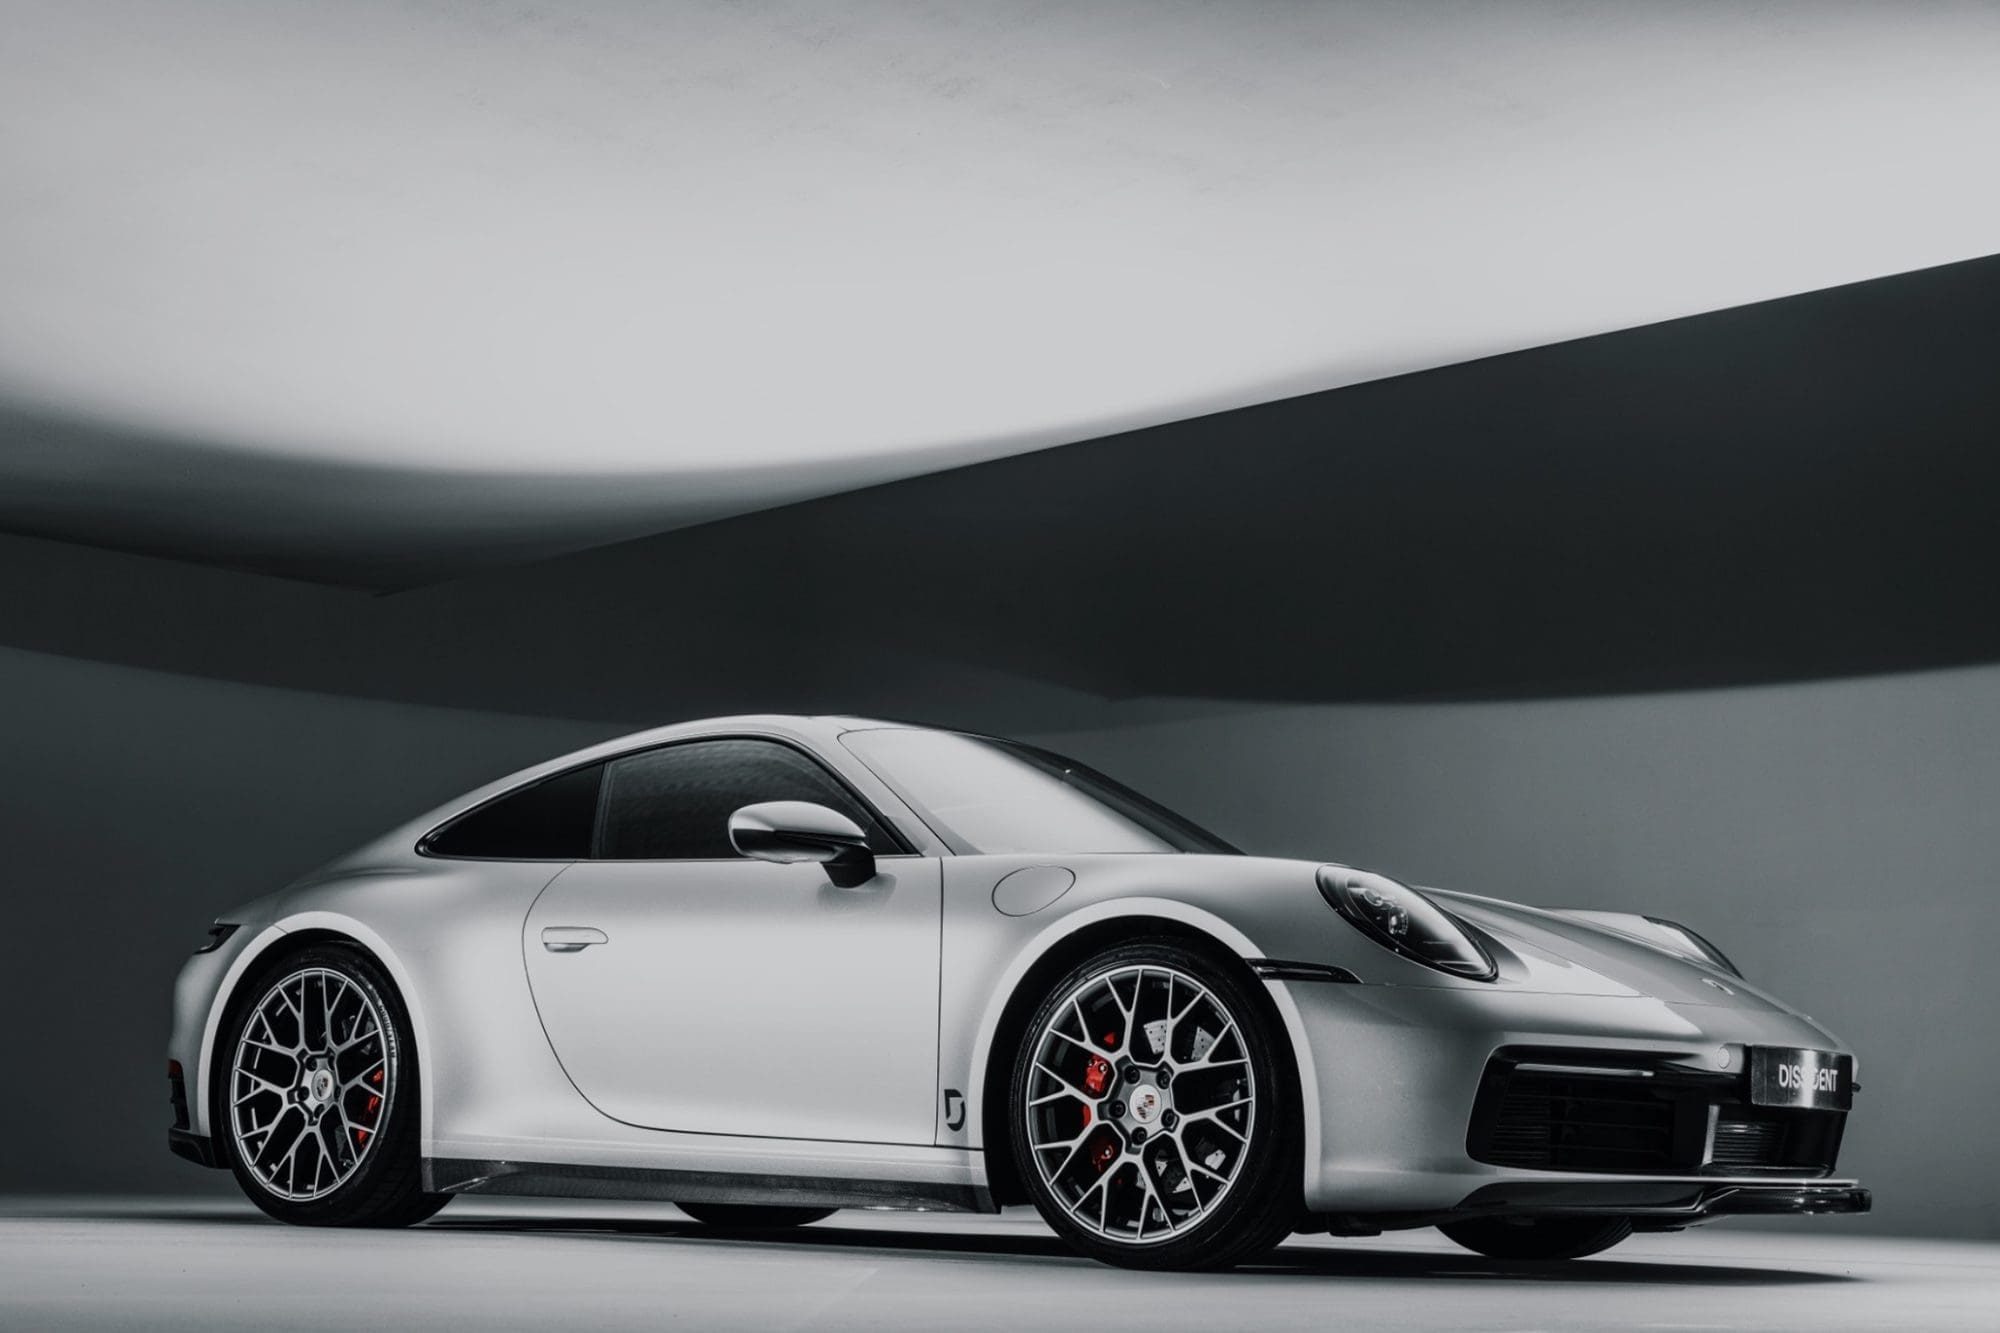 Dissident_Porsche_Carrera_911_922_Launch_Edition_Carbon_Fibre_Kit_NWM6